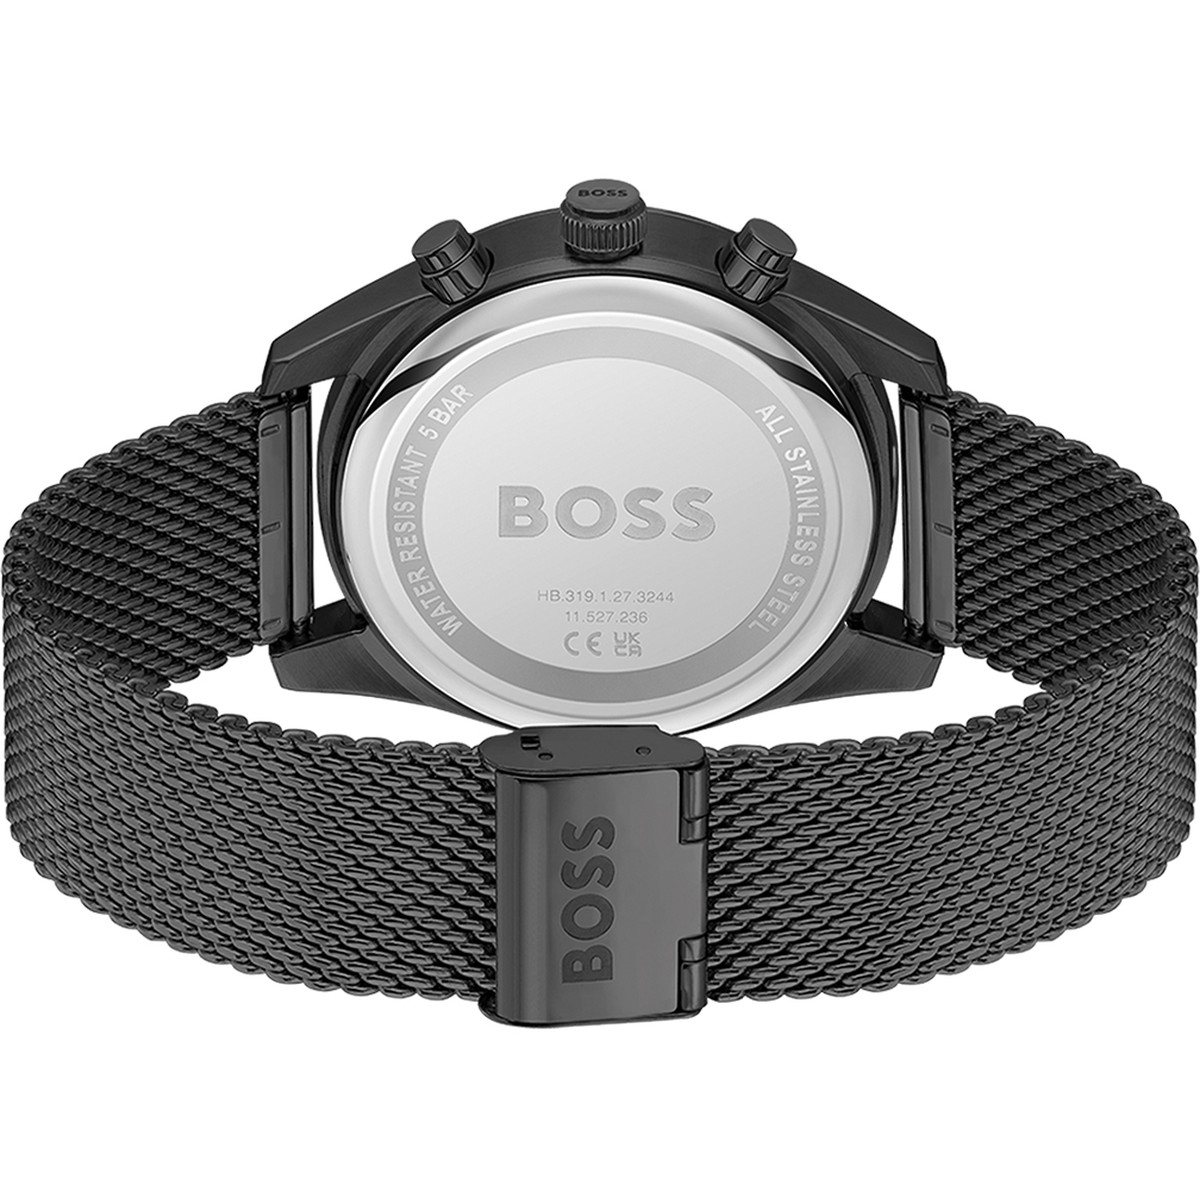 Montre BOSS sport lux homme chronographe bracelet acier inoxydable noir - vue 3